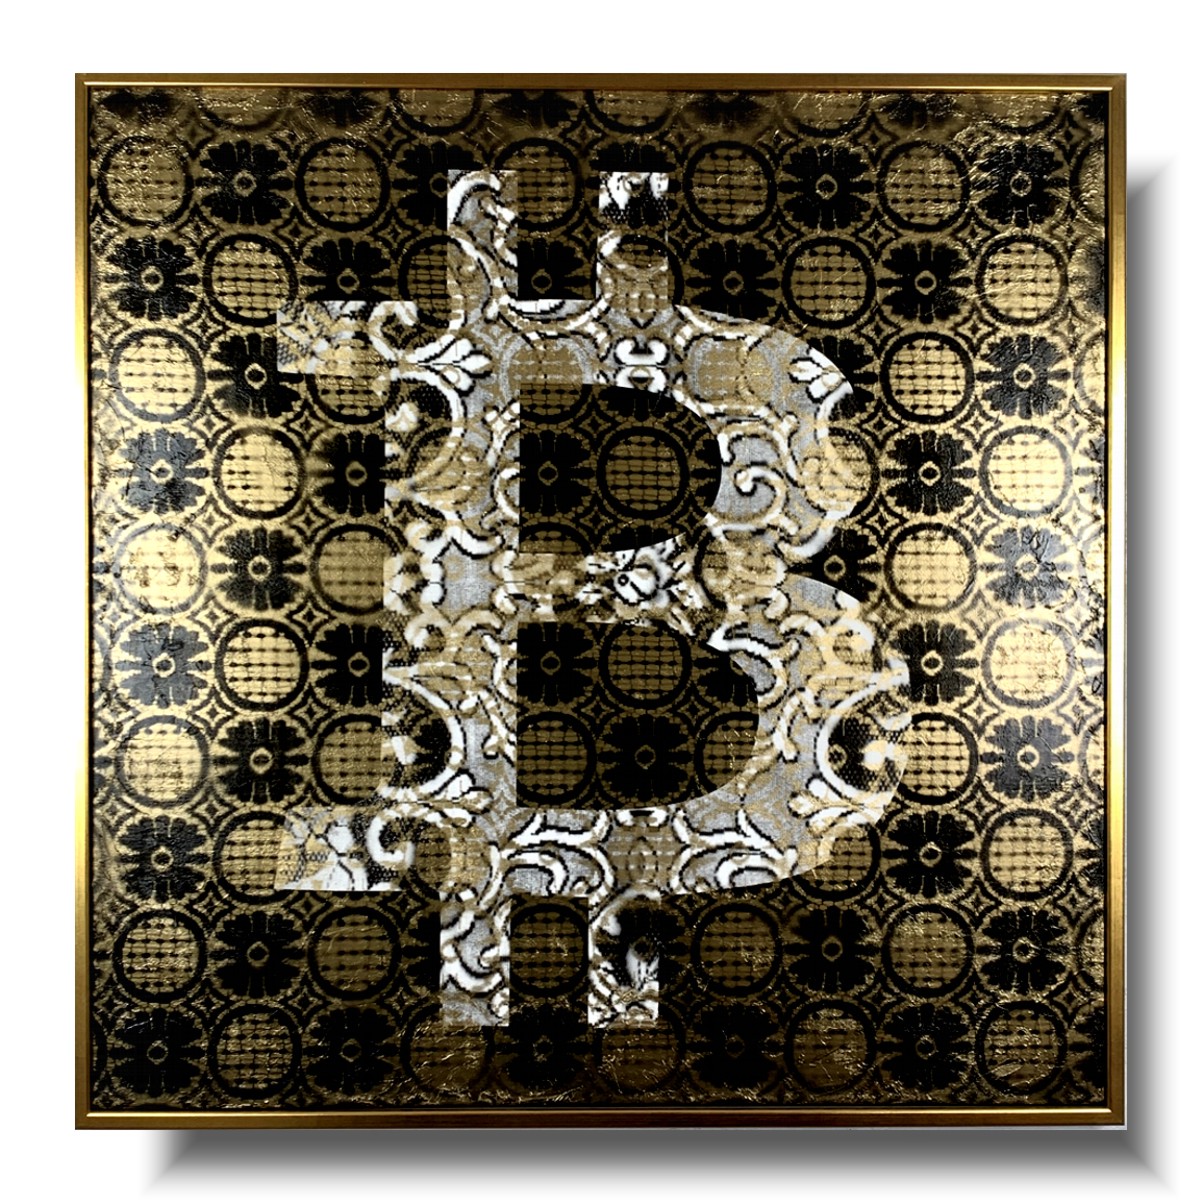 nowoczesny obraz, bitcoin obraz, obraz złoty, obraz bitcoin, obraz w złotej ramie, obraz kryptowaluty, obrazy do salonu sprzedaży,